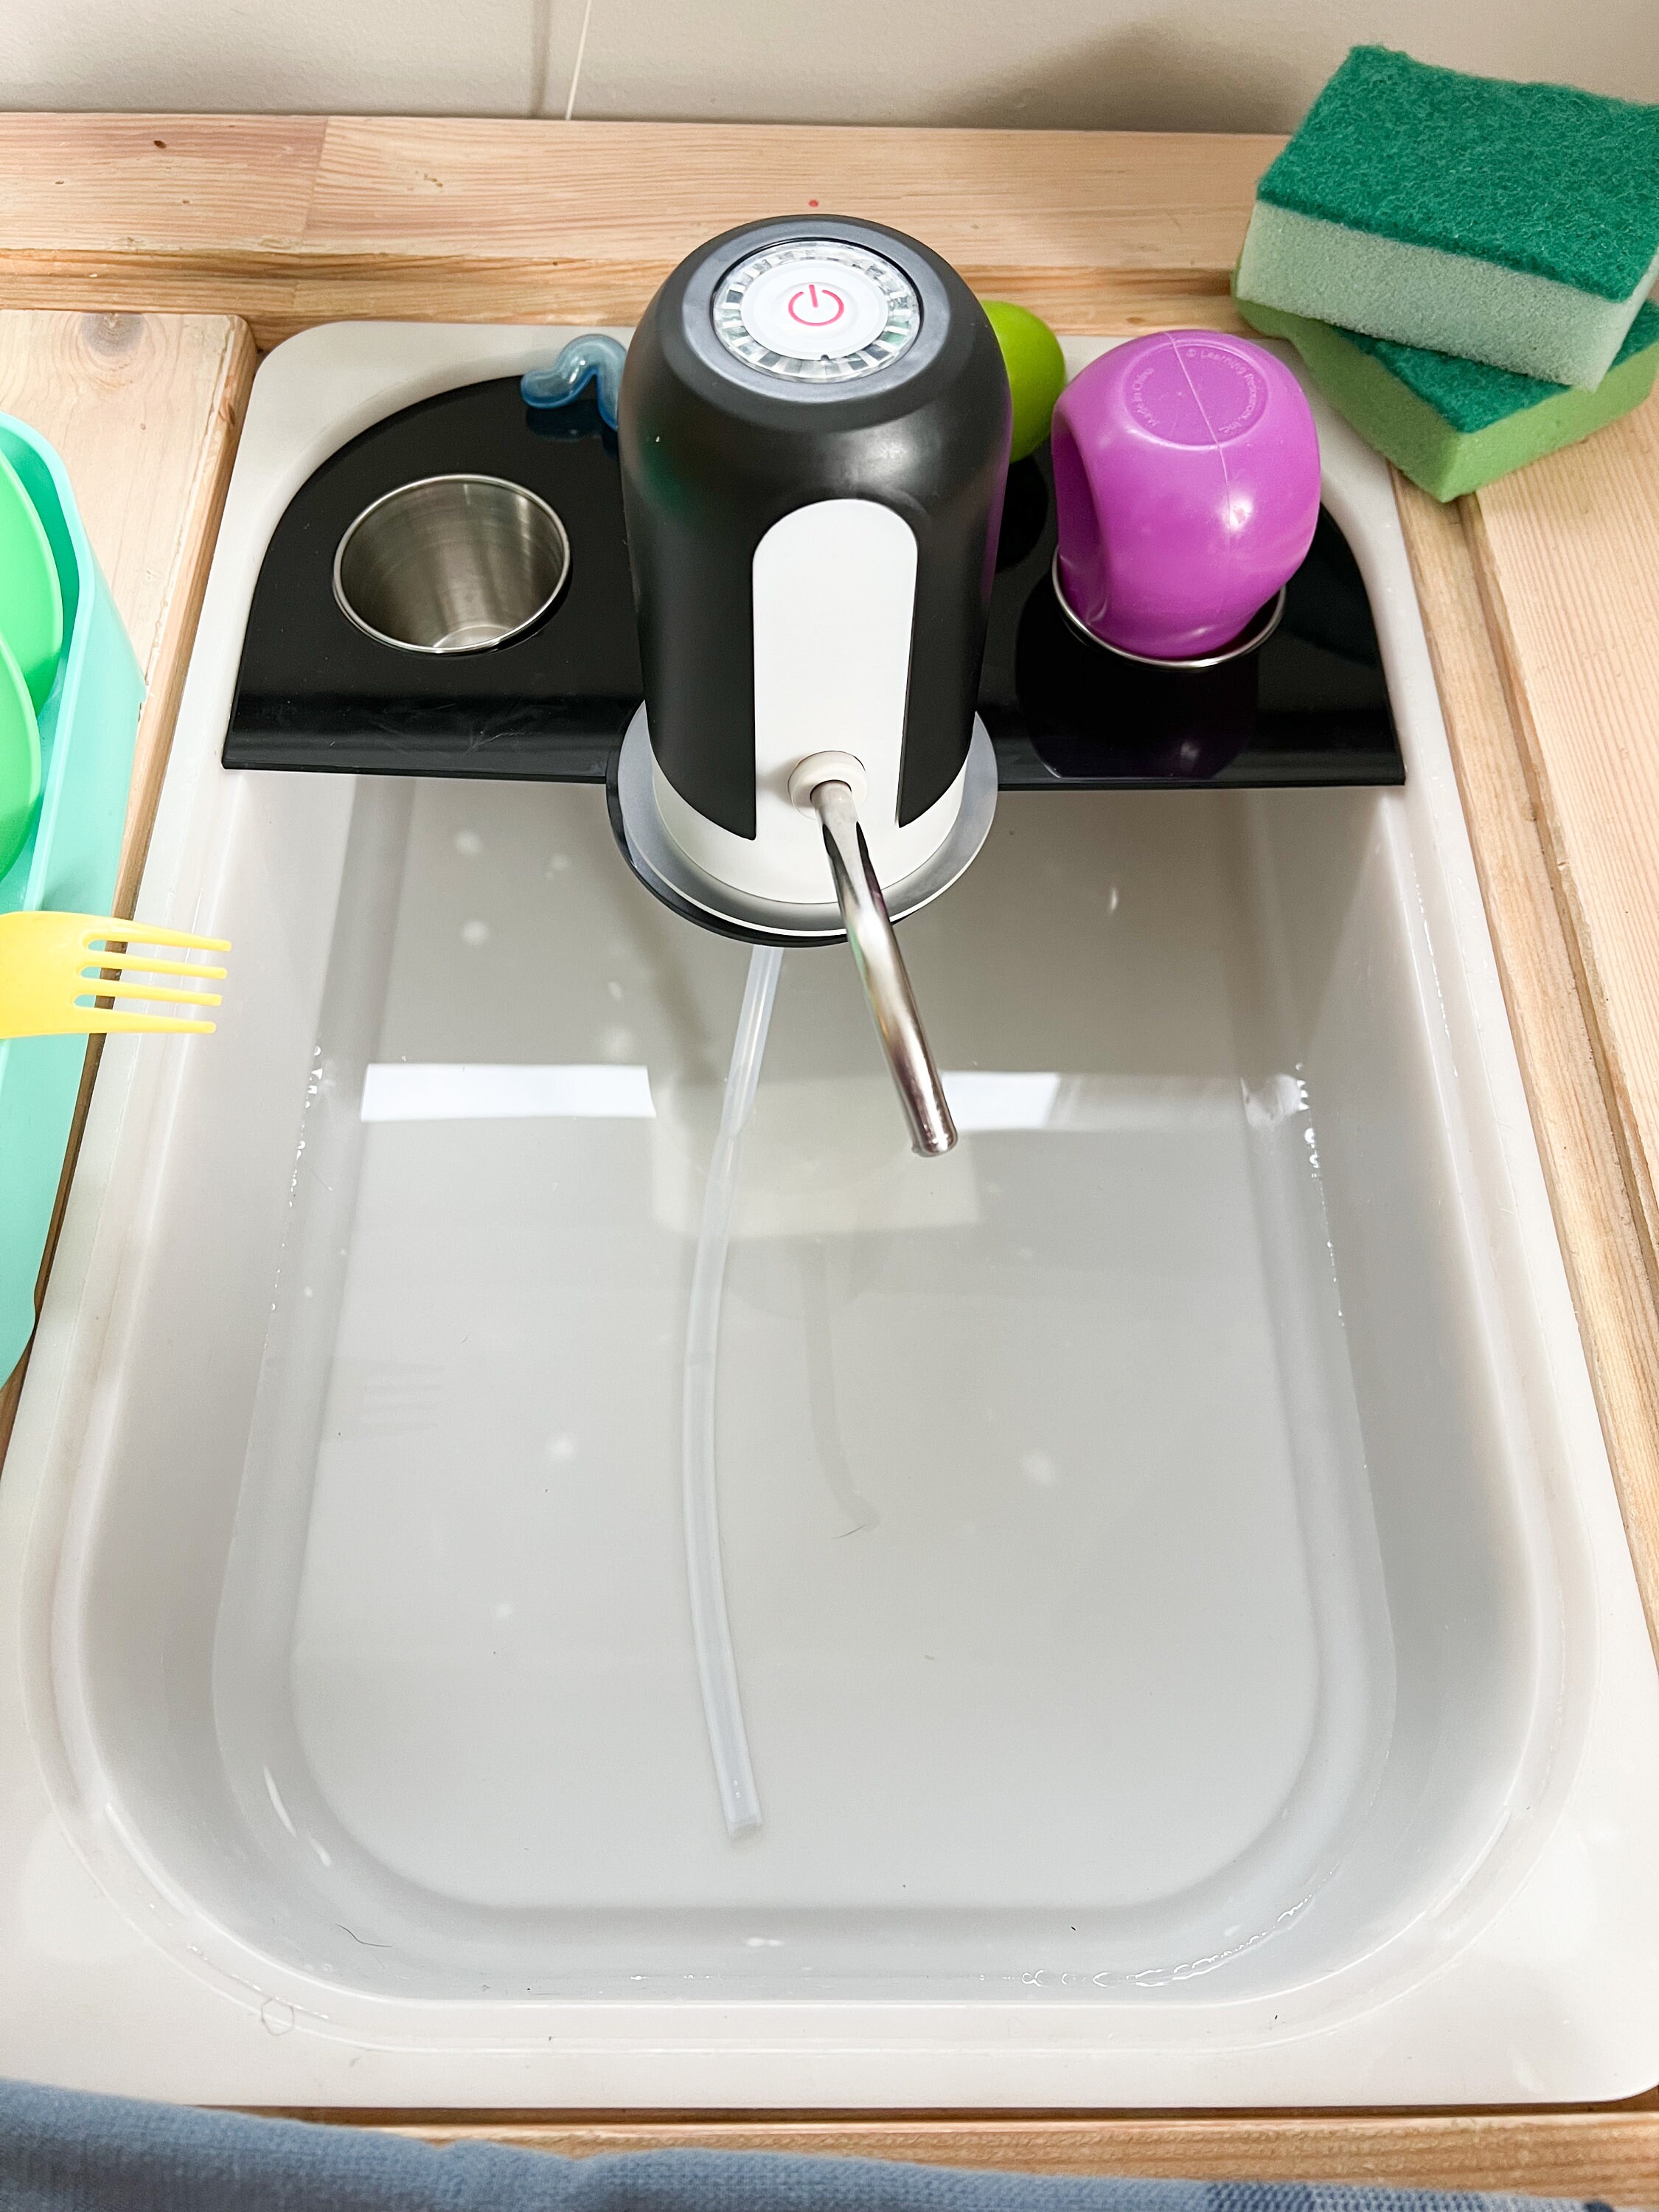 Kitchen Sink Play Set / Flisat Sink Insert / Play Sink / Flisat